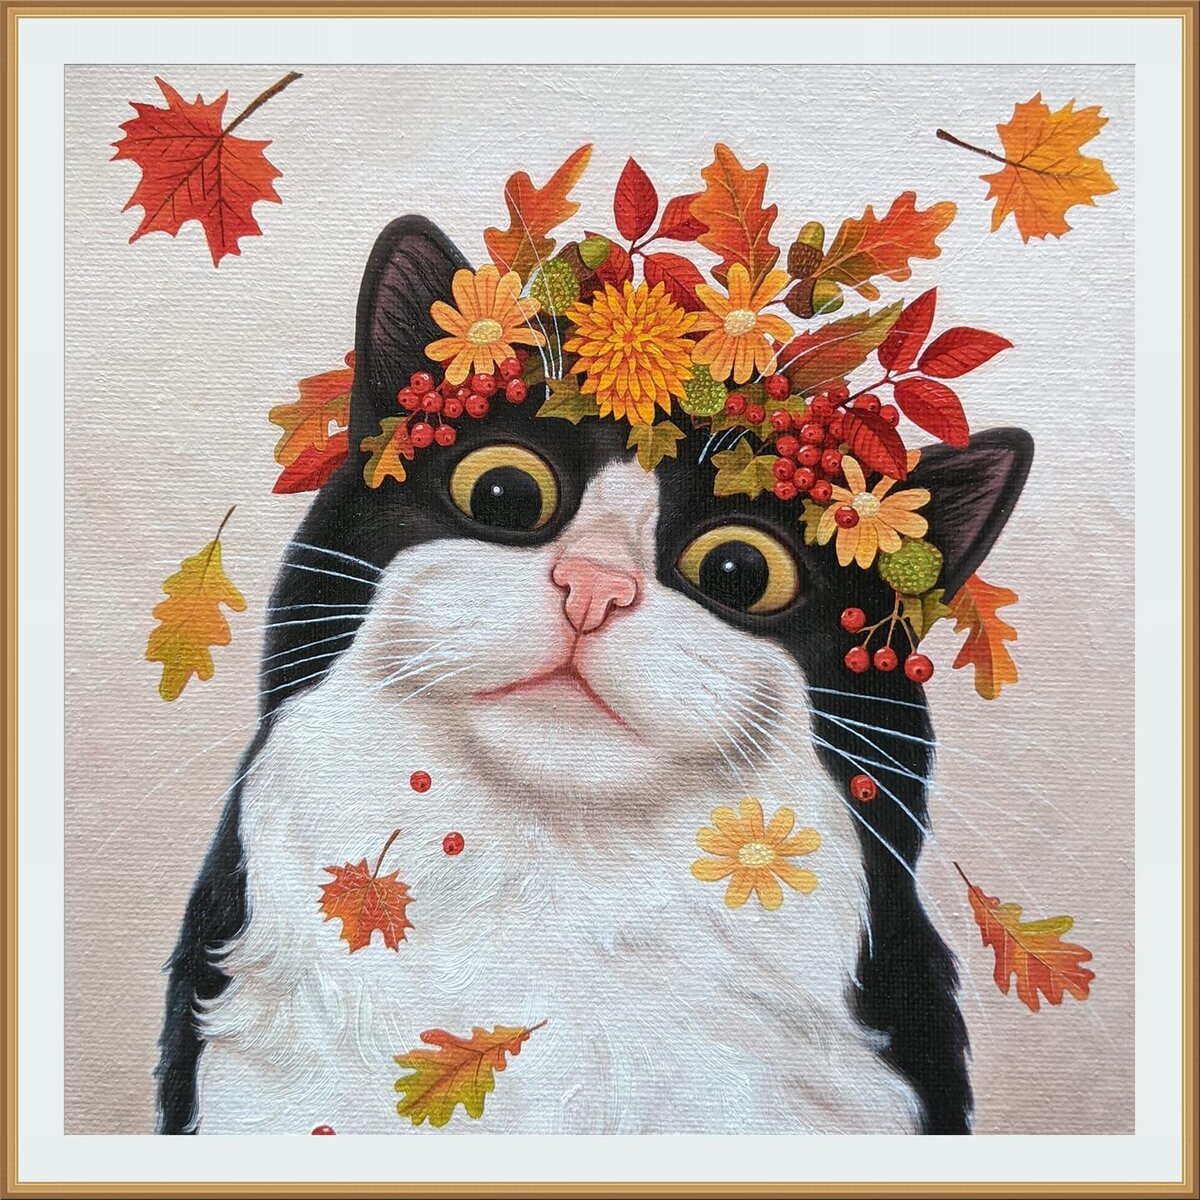     /  Vicky Mount / Autumn cat /  